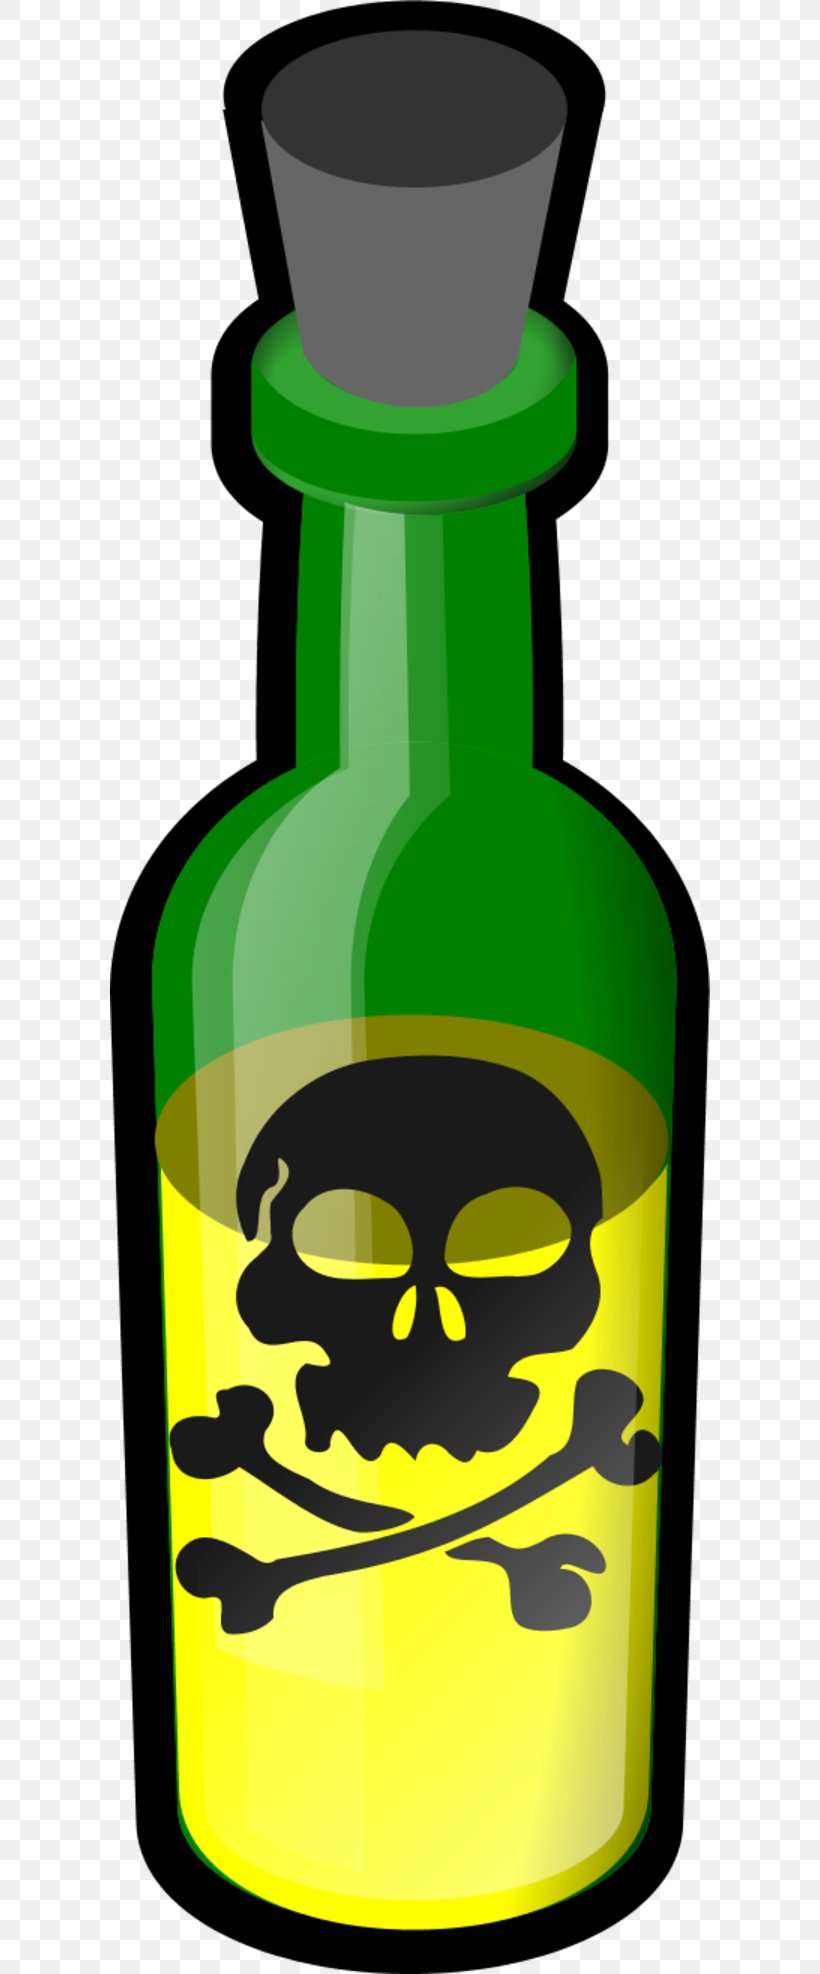 Skull And Crossbones Human Skull Symbolism Poison Clip Art, PNG, 600x1974px, Skull And Crossbones, Belladonna, Bone, Bottle, Drinkware Download Free